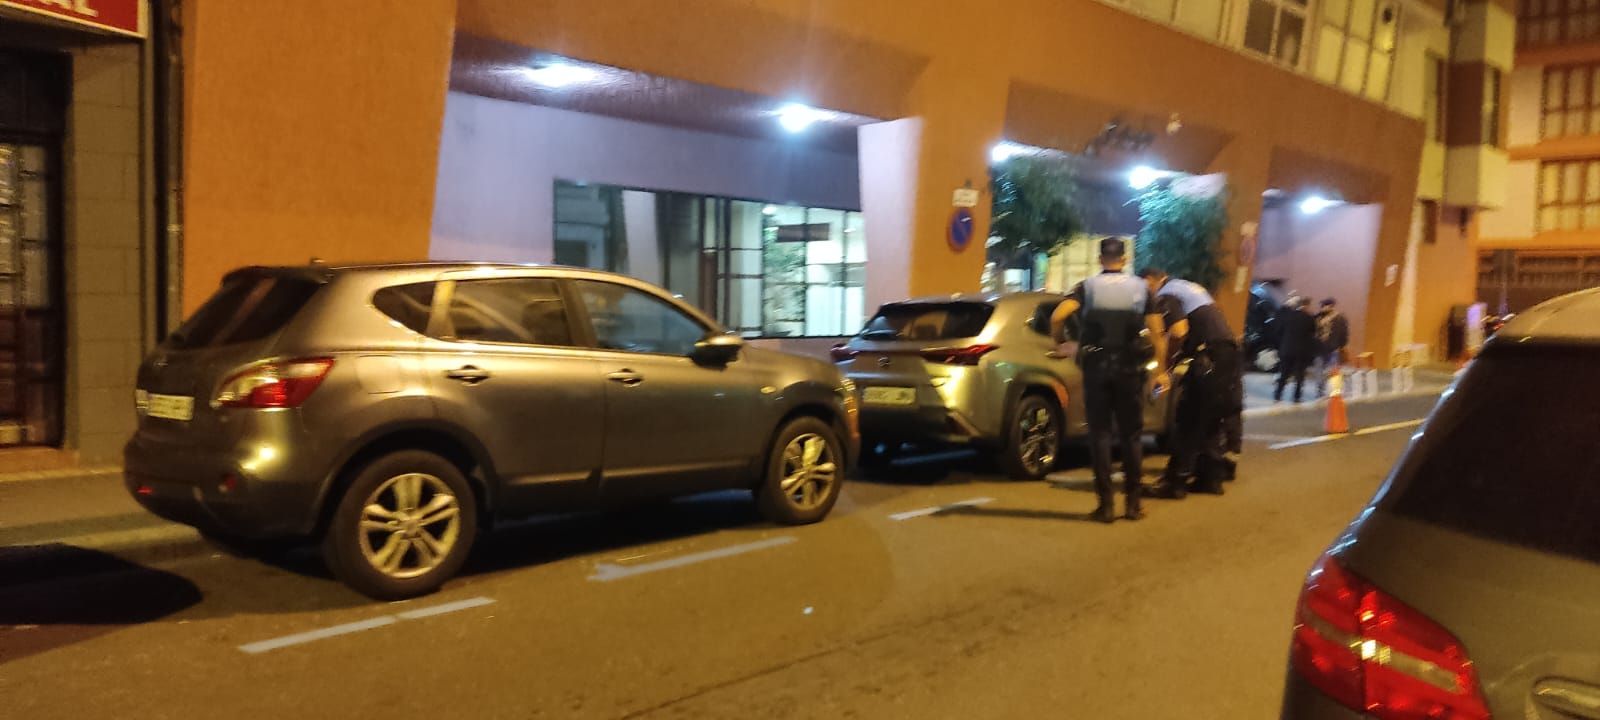 Una pareja para un coche que colisionó contra varios vehículos en Arenales